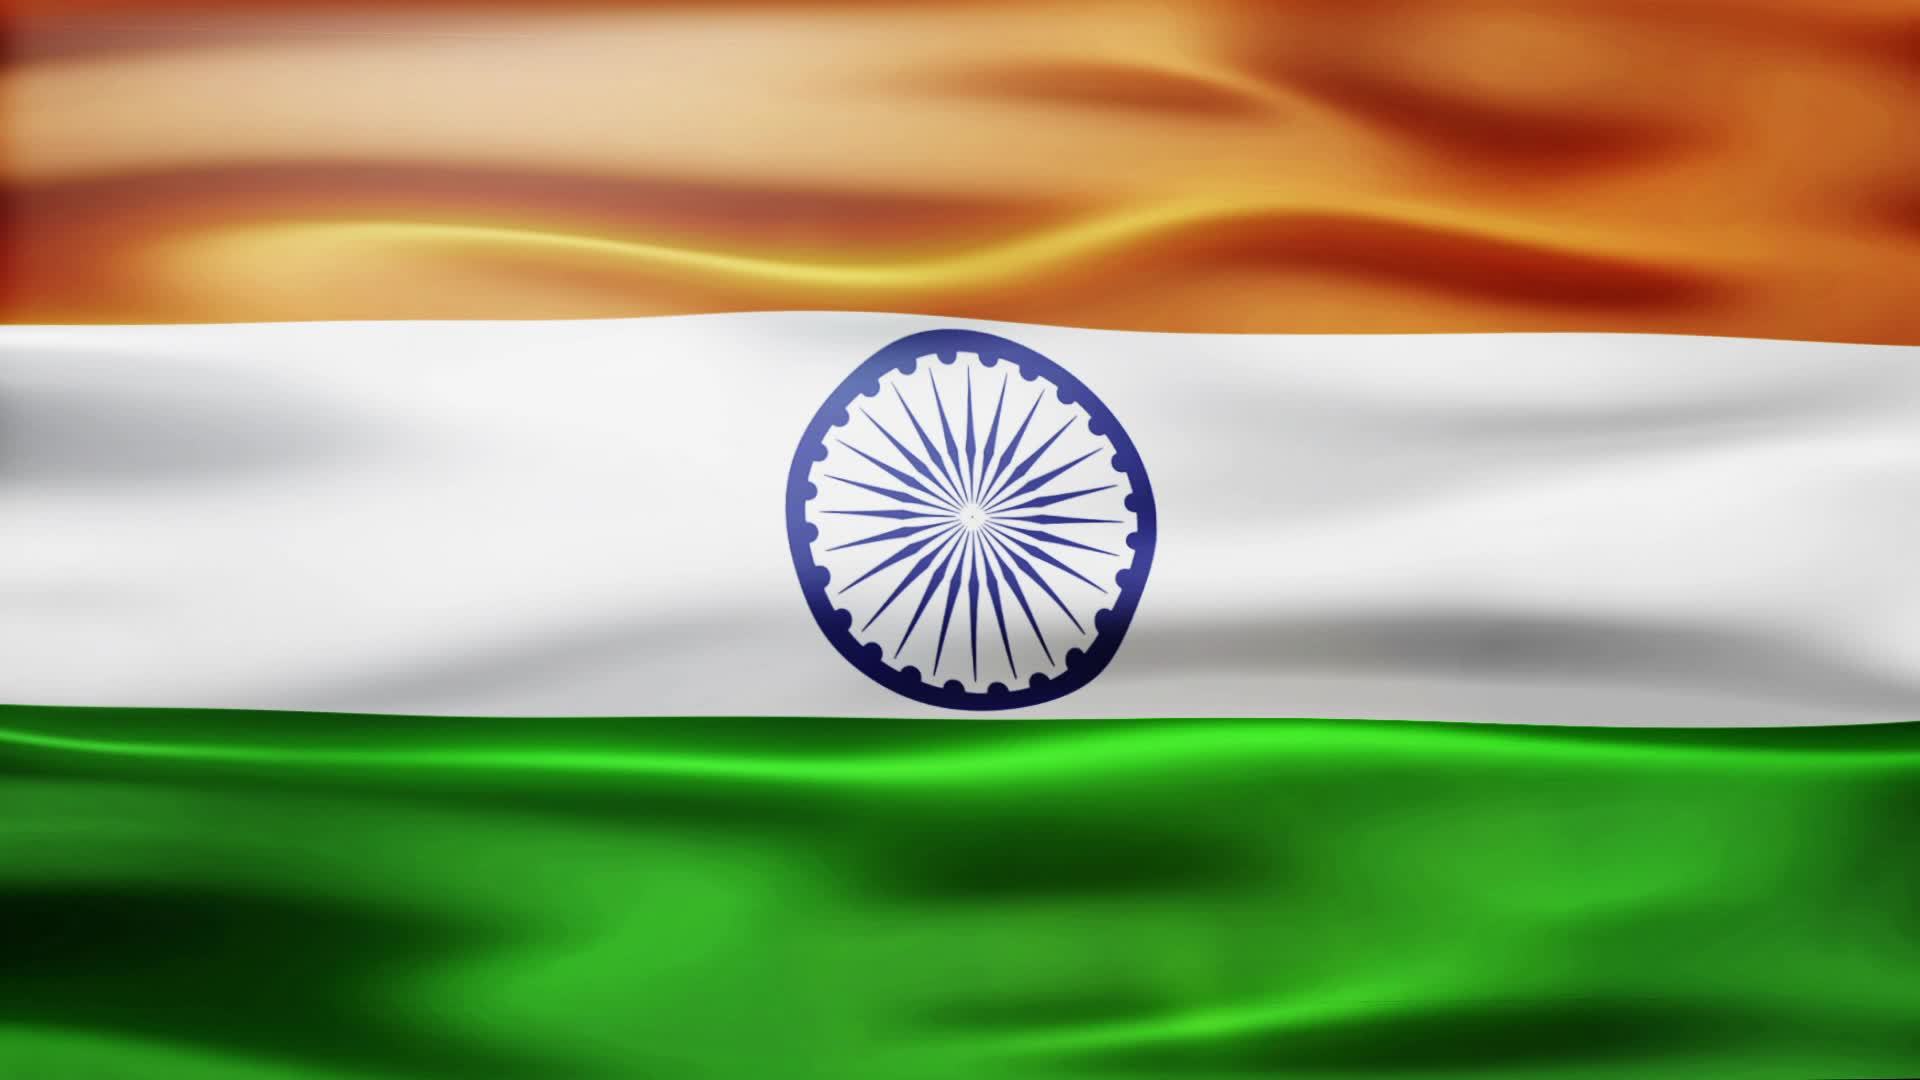 Флаг индии - цвета, история возникновения, что обозначает